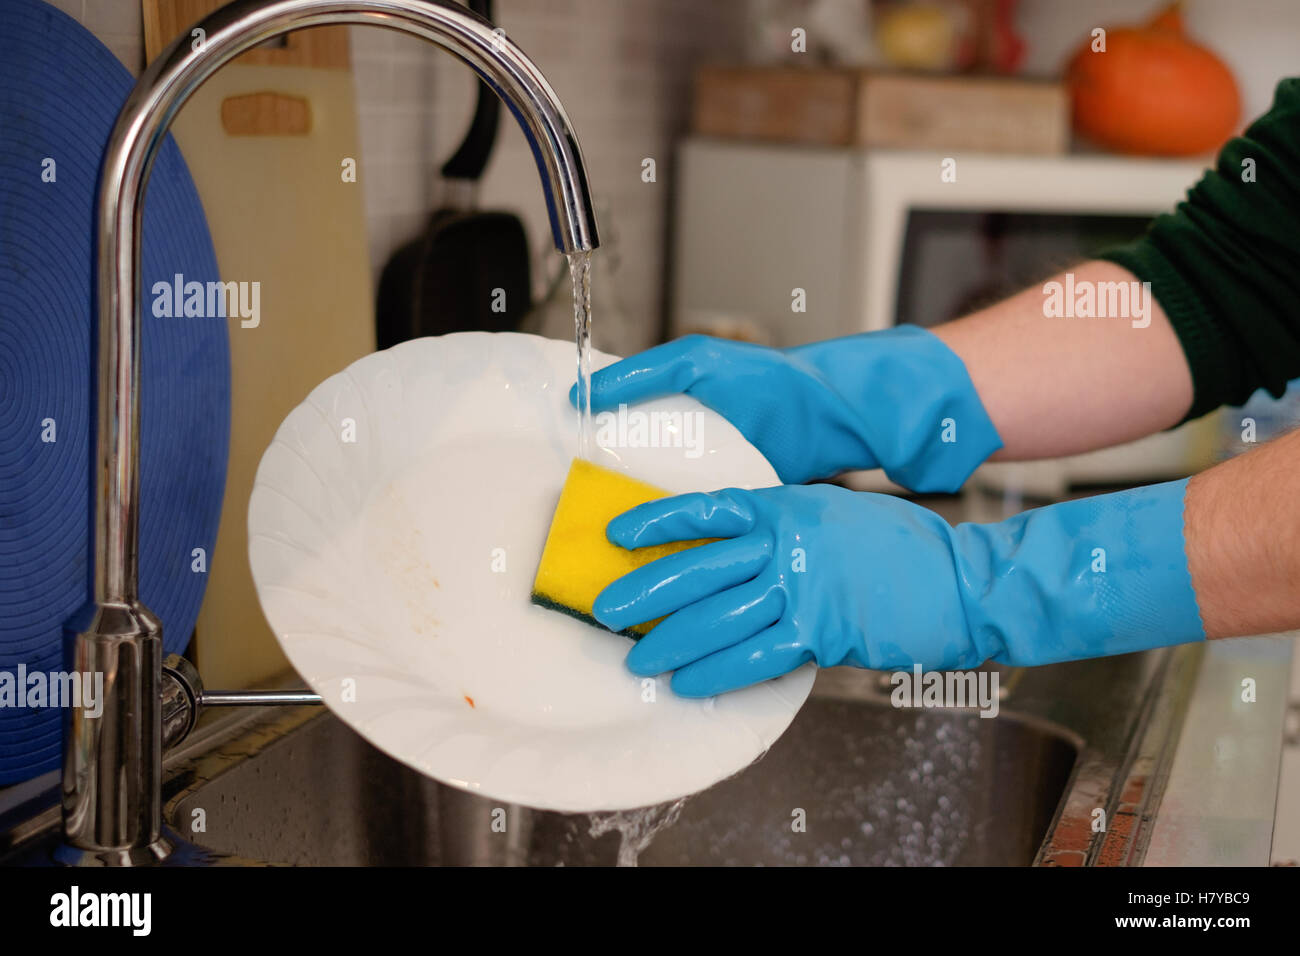 Nettoyage des mains de vaisselle dans le robinet de cuisine Banque D'Images